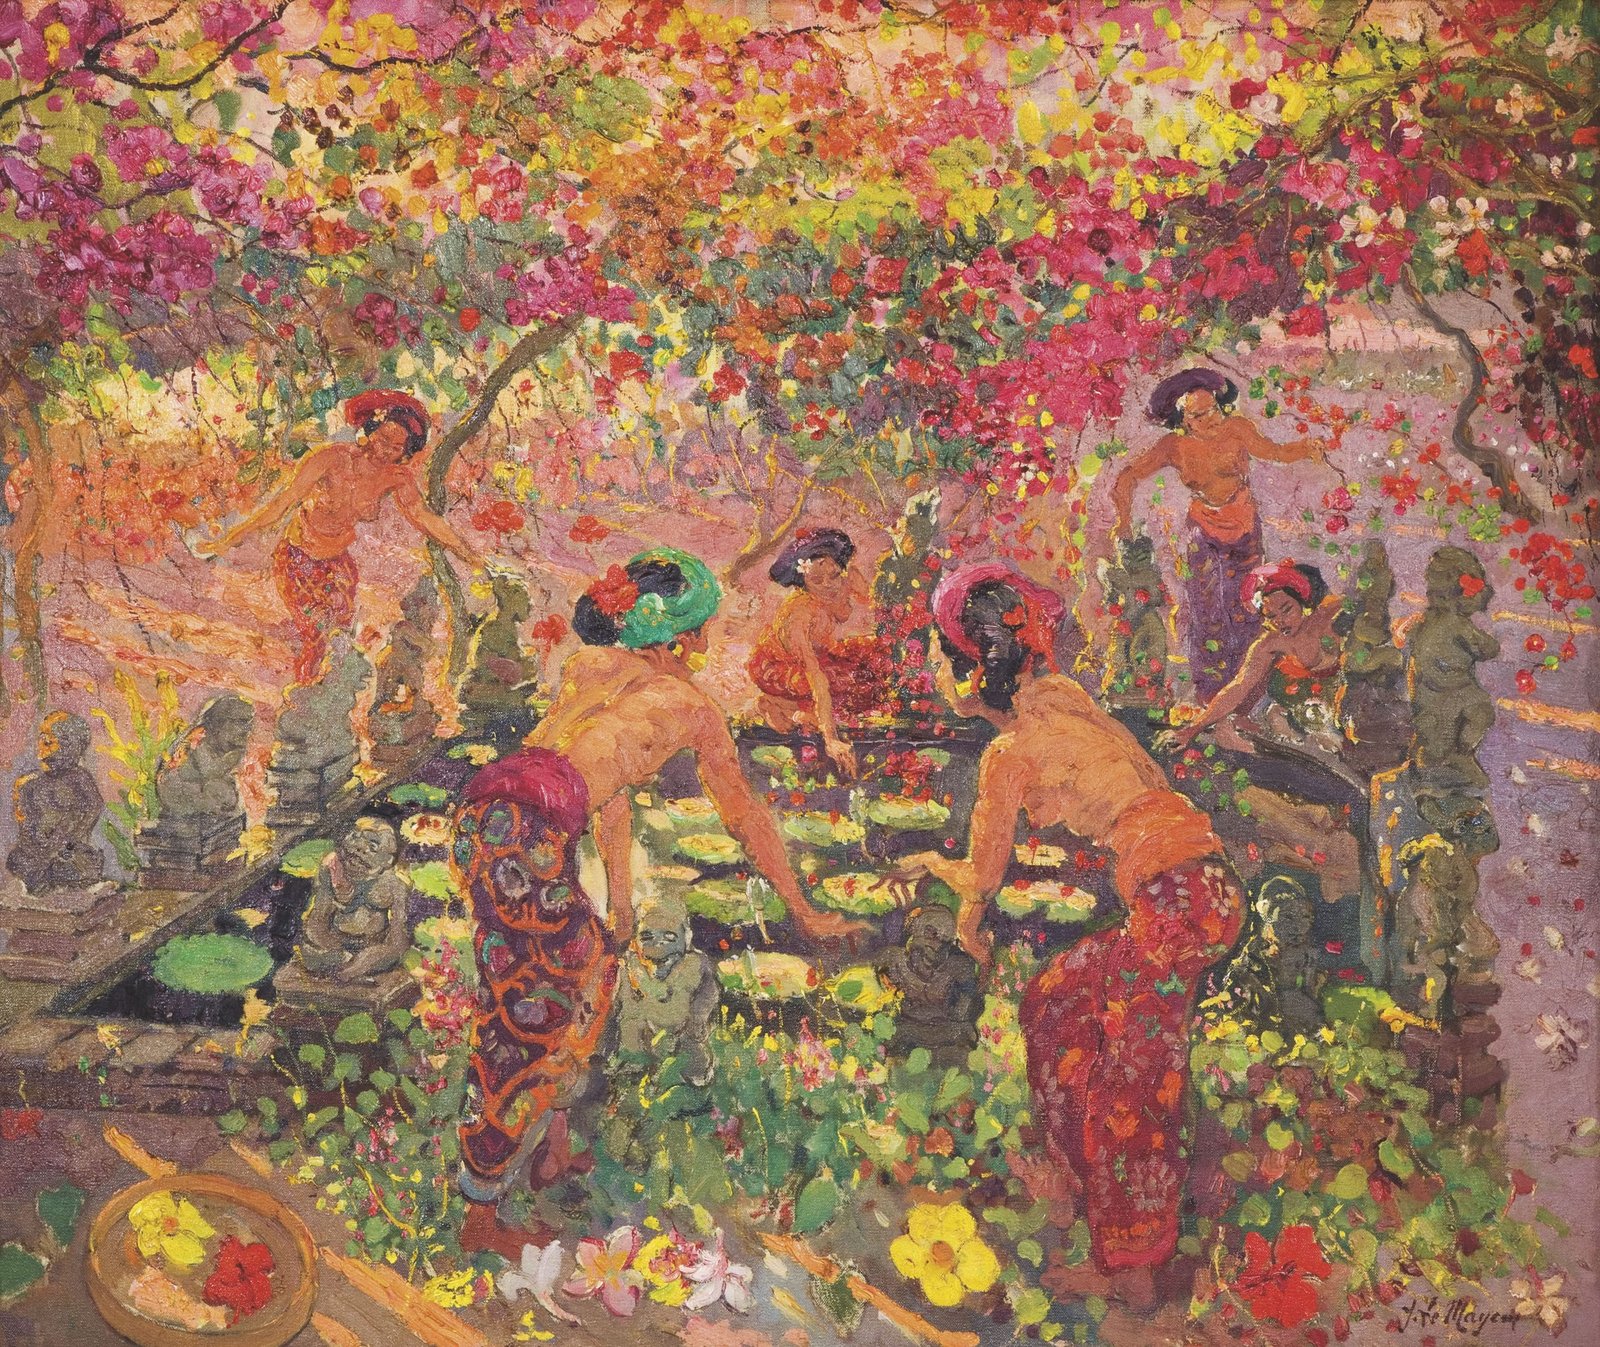 Autour de l'étang aux lotus, 1950, huile sur toile, Adrien-Jean Le Mayeur de Merprès